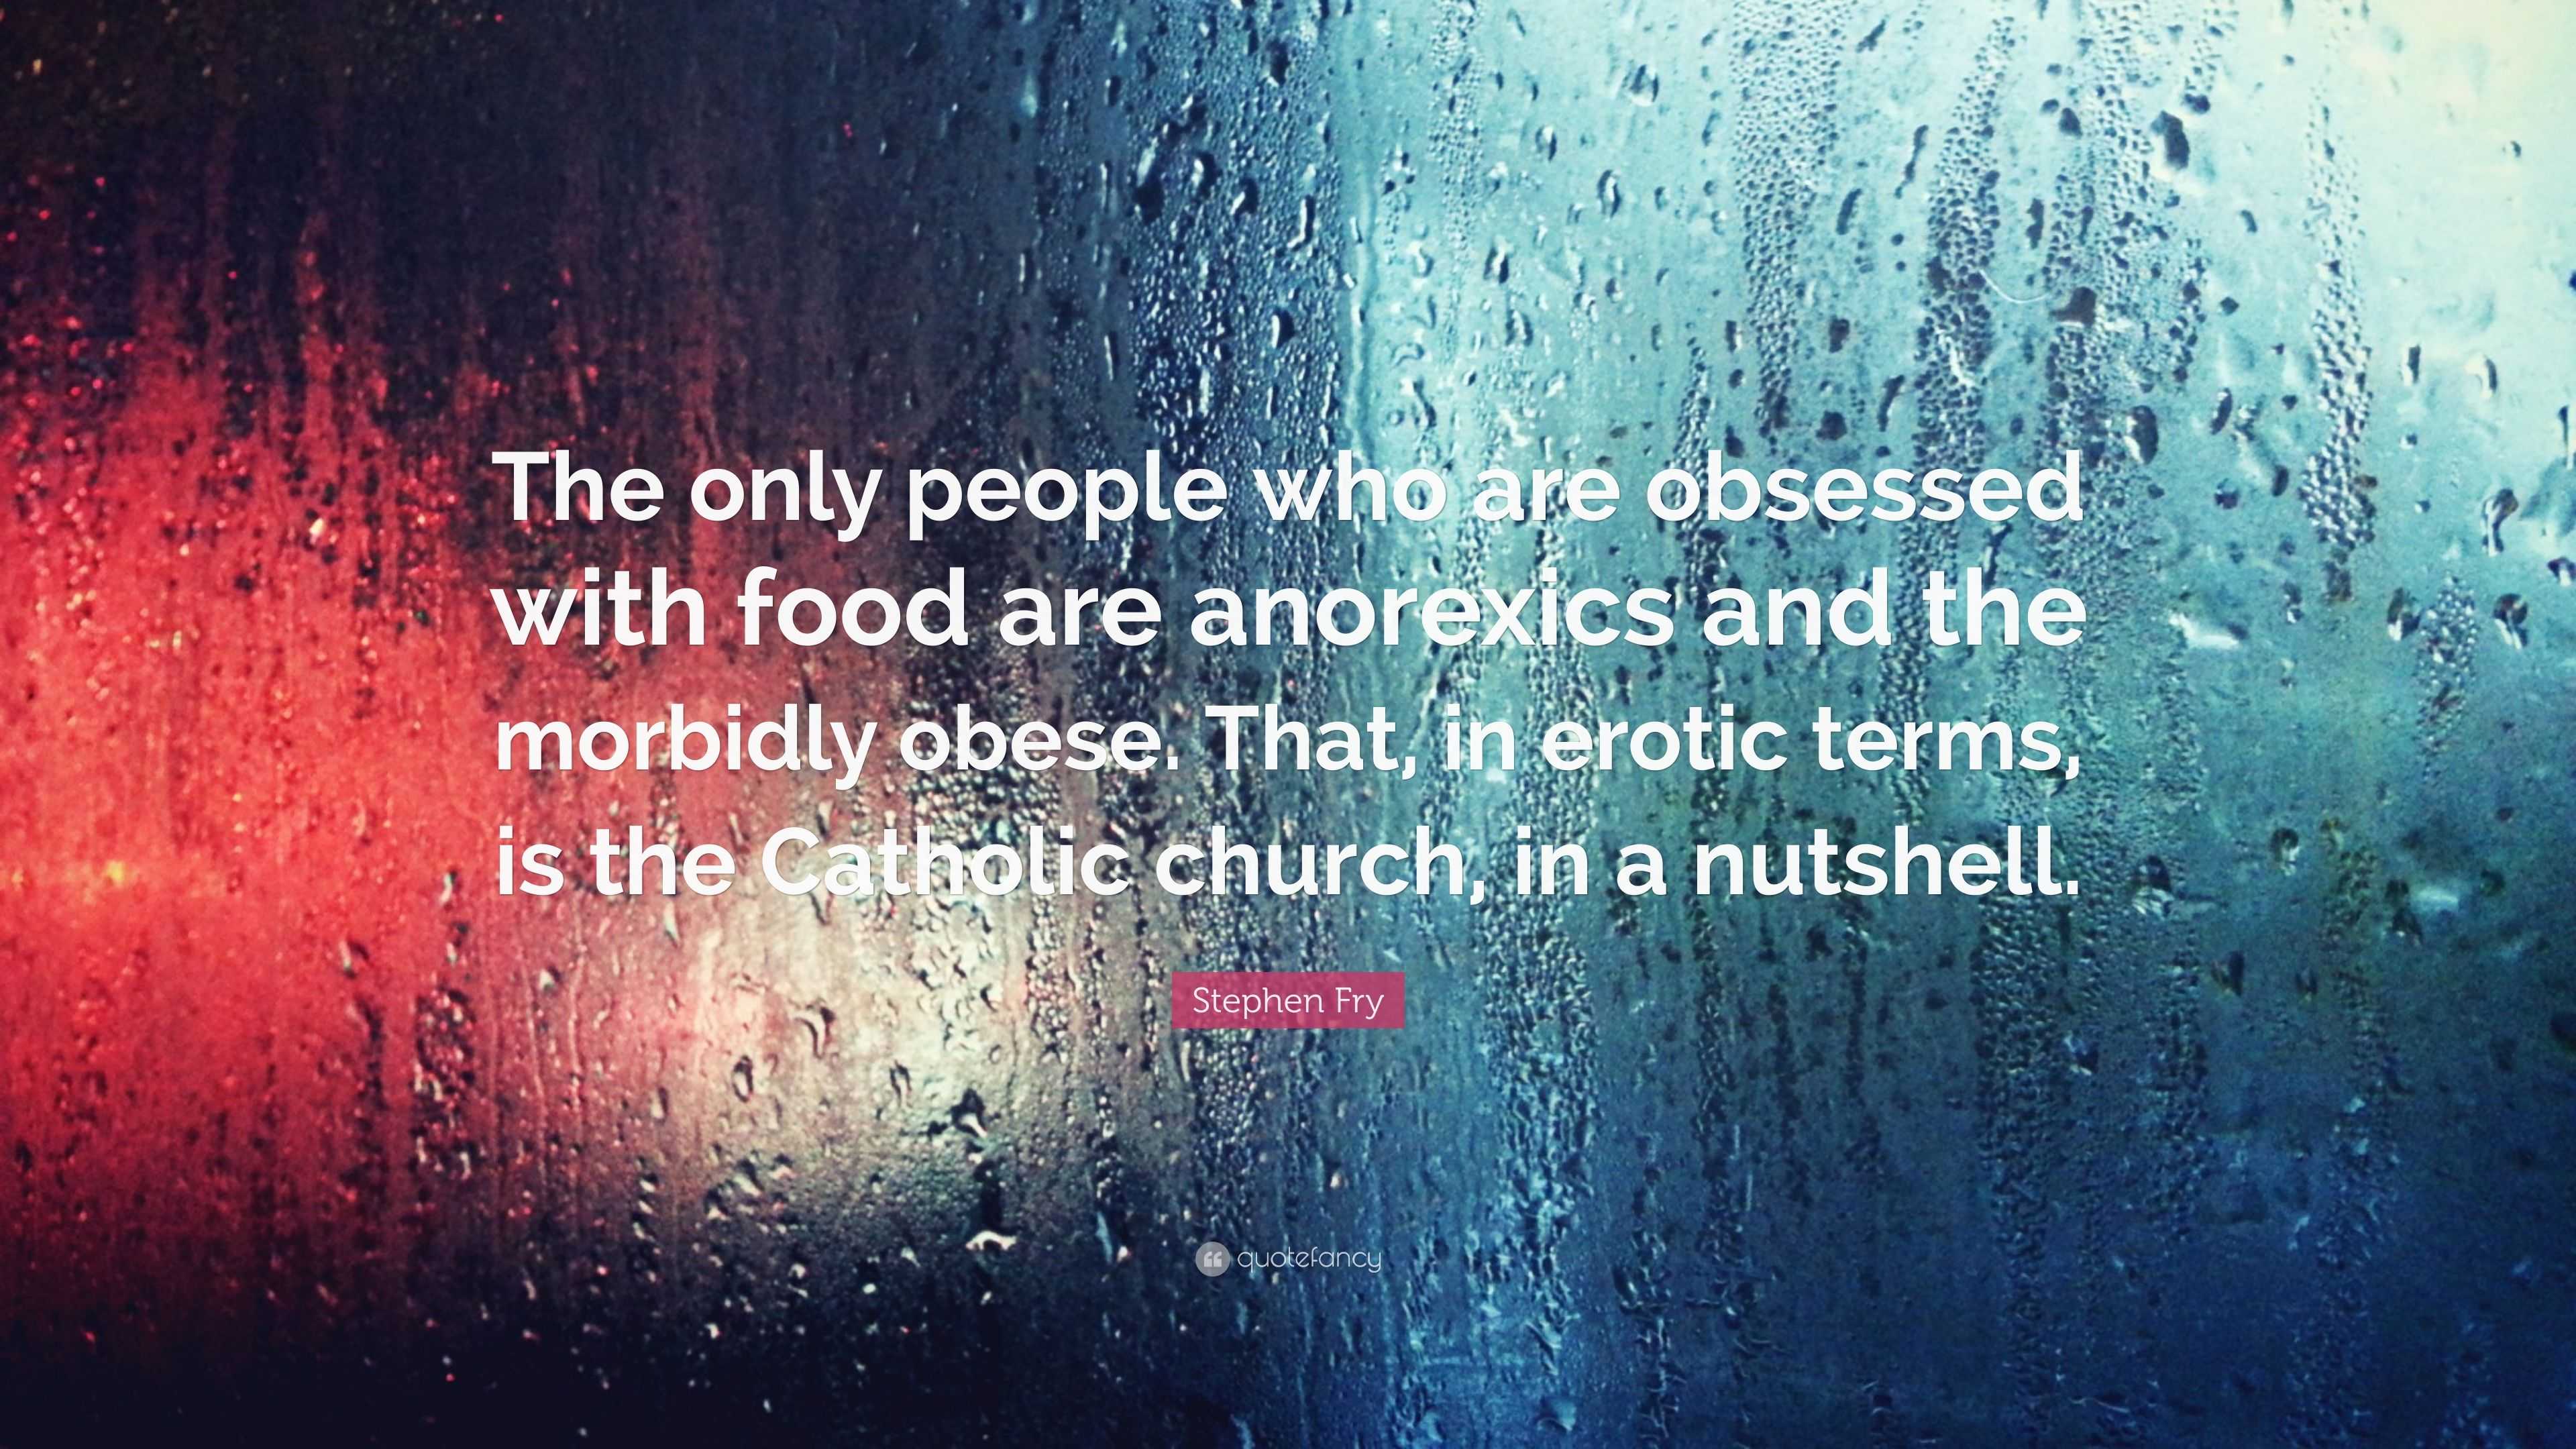 Catholic and erotic